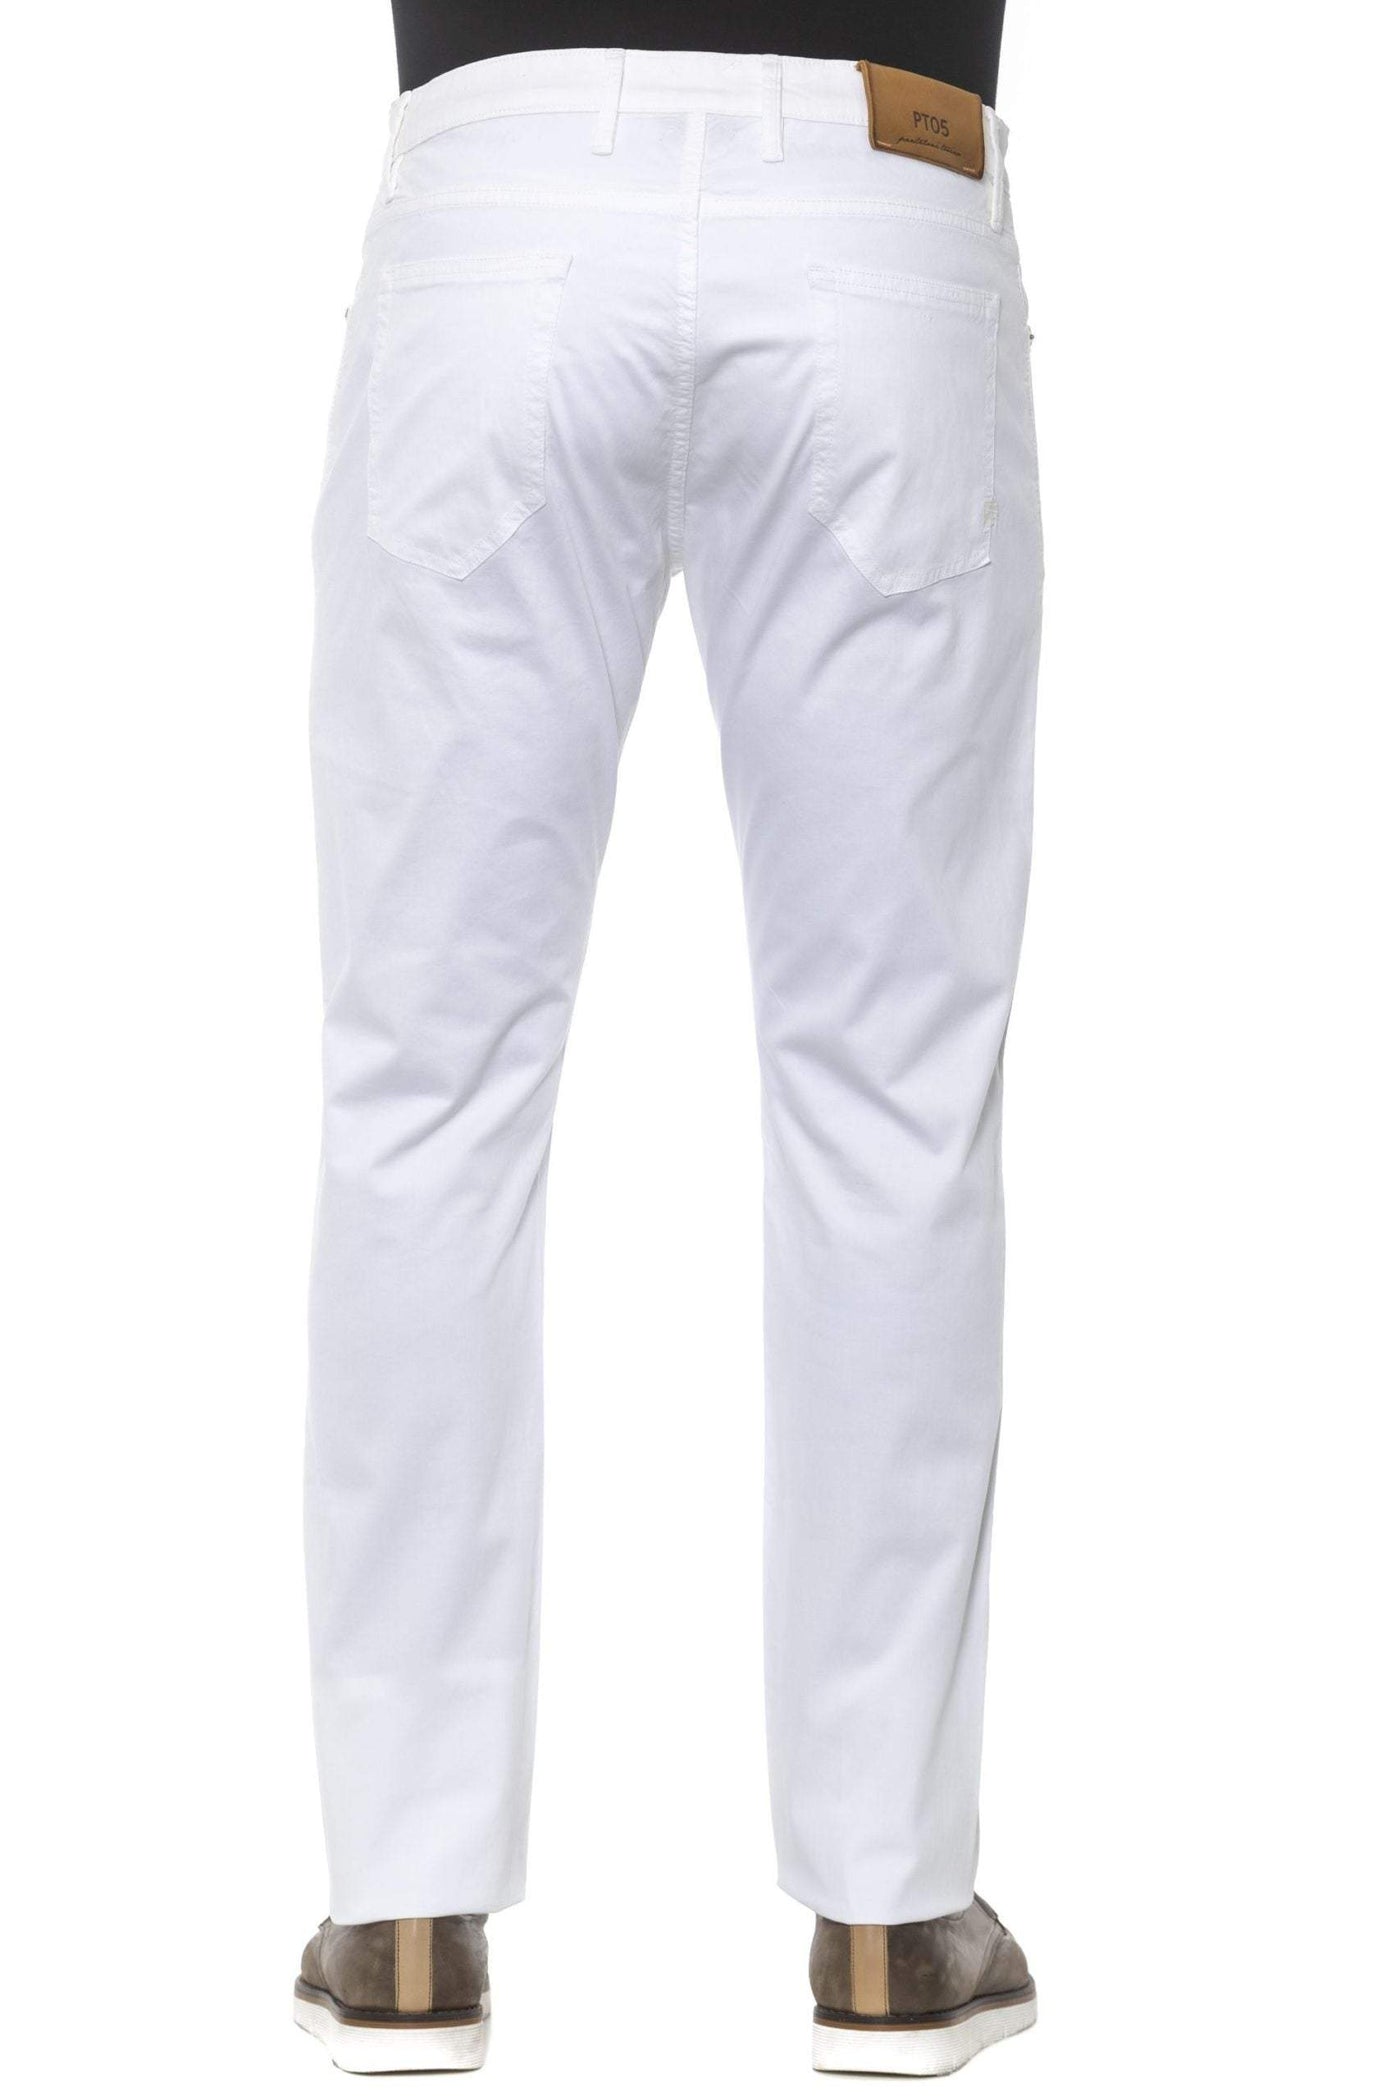 PT Torino White Cotton Jeans & Pant #men, feed-1, Jeans & Pants - Men - Clothing, PT Torino, W36, W38, White at SEYMAYKA